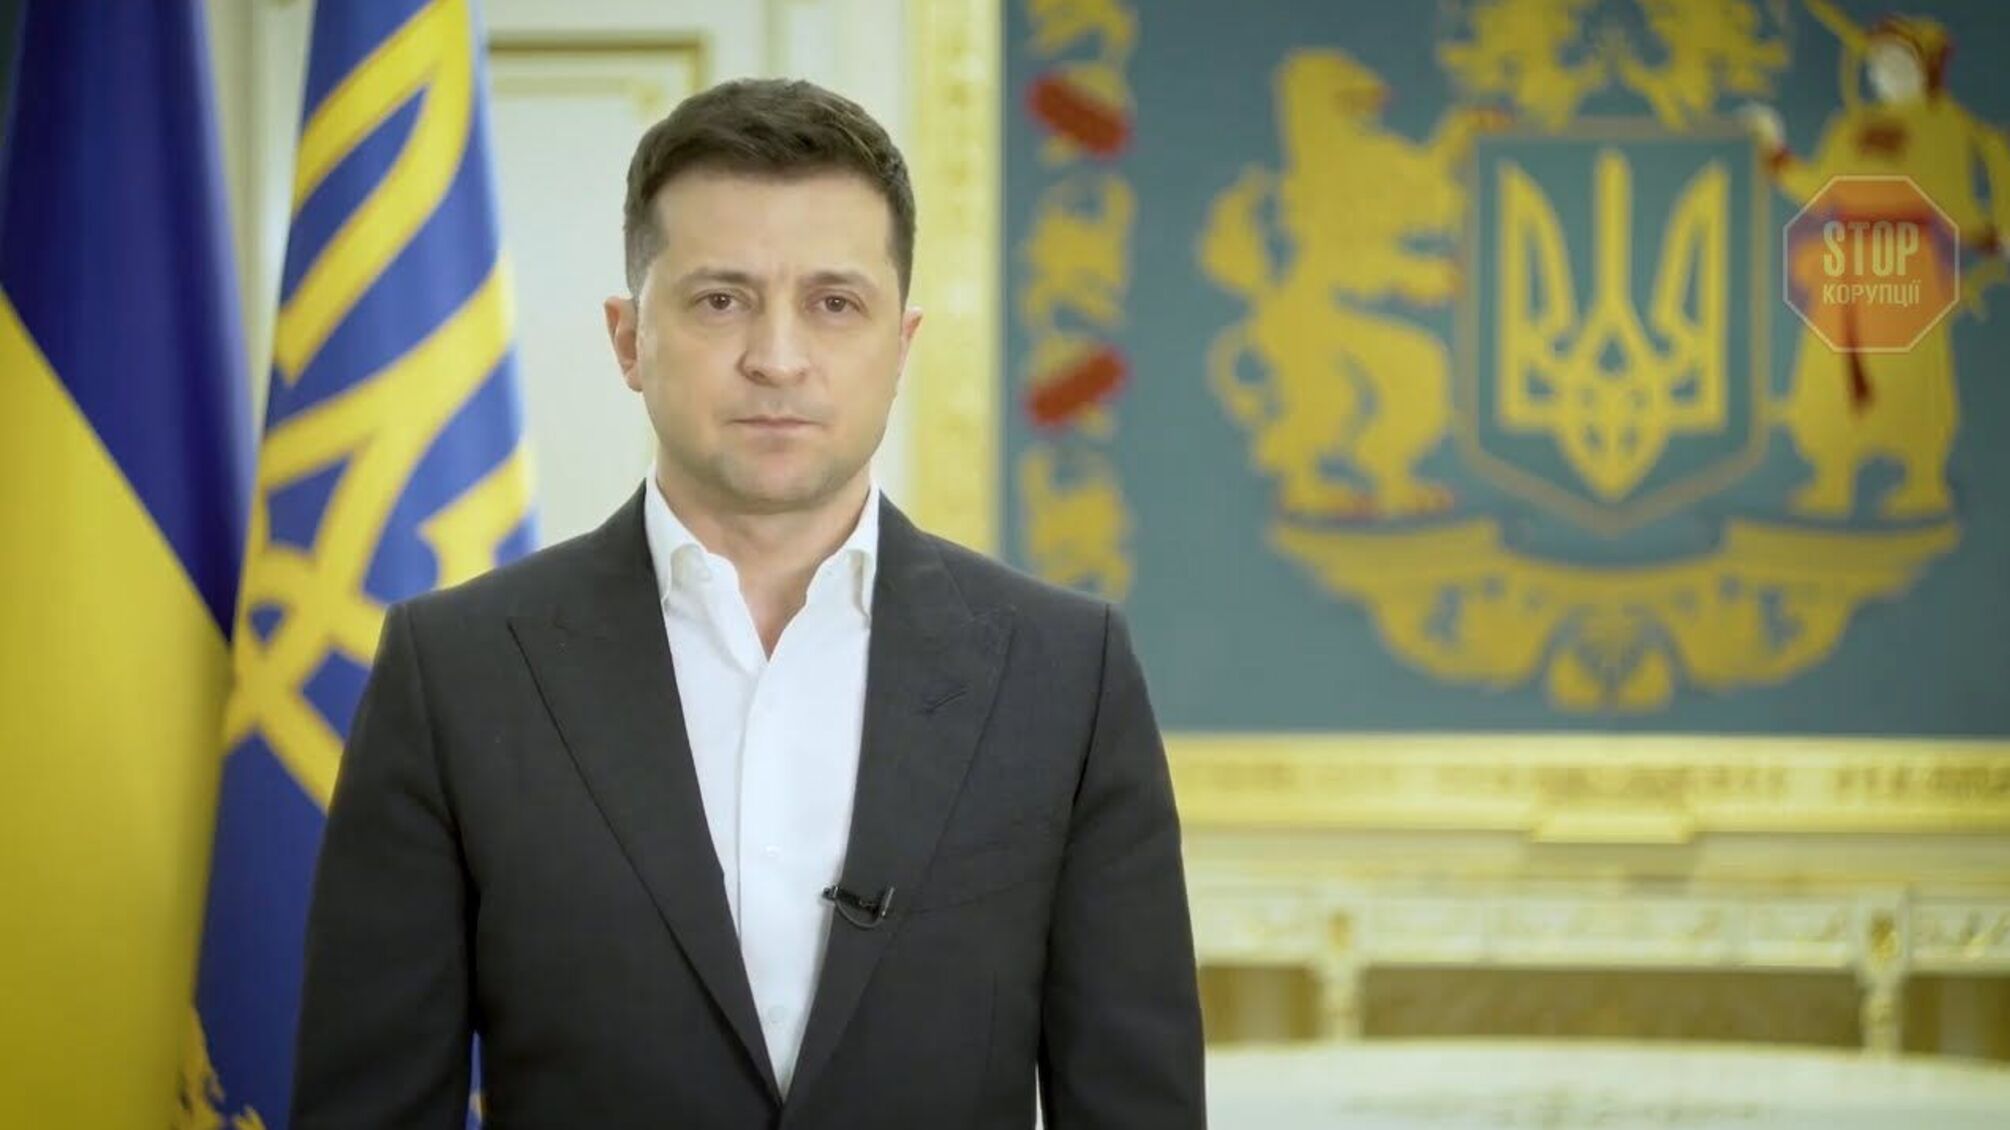 Президент відреагував на загострення на Донбасі